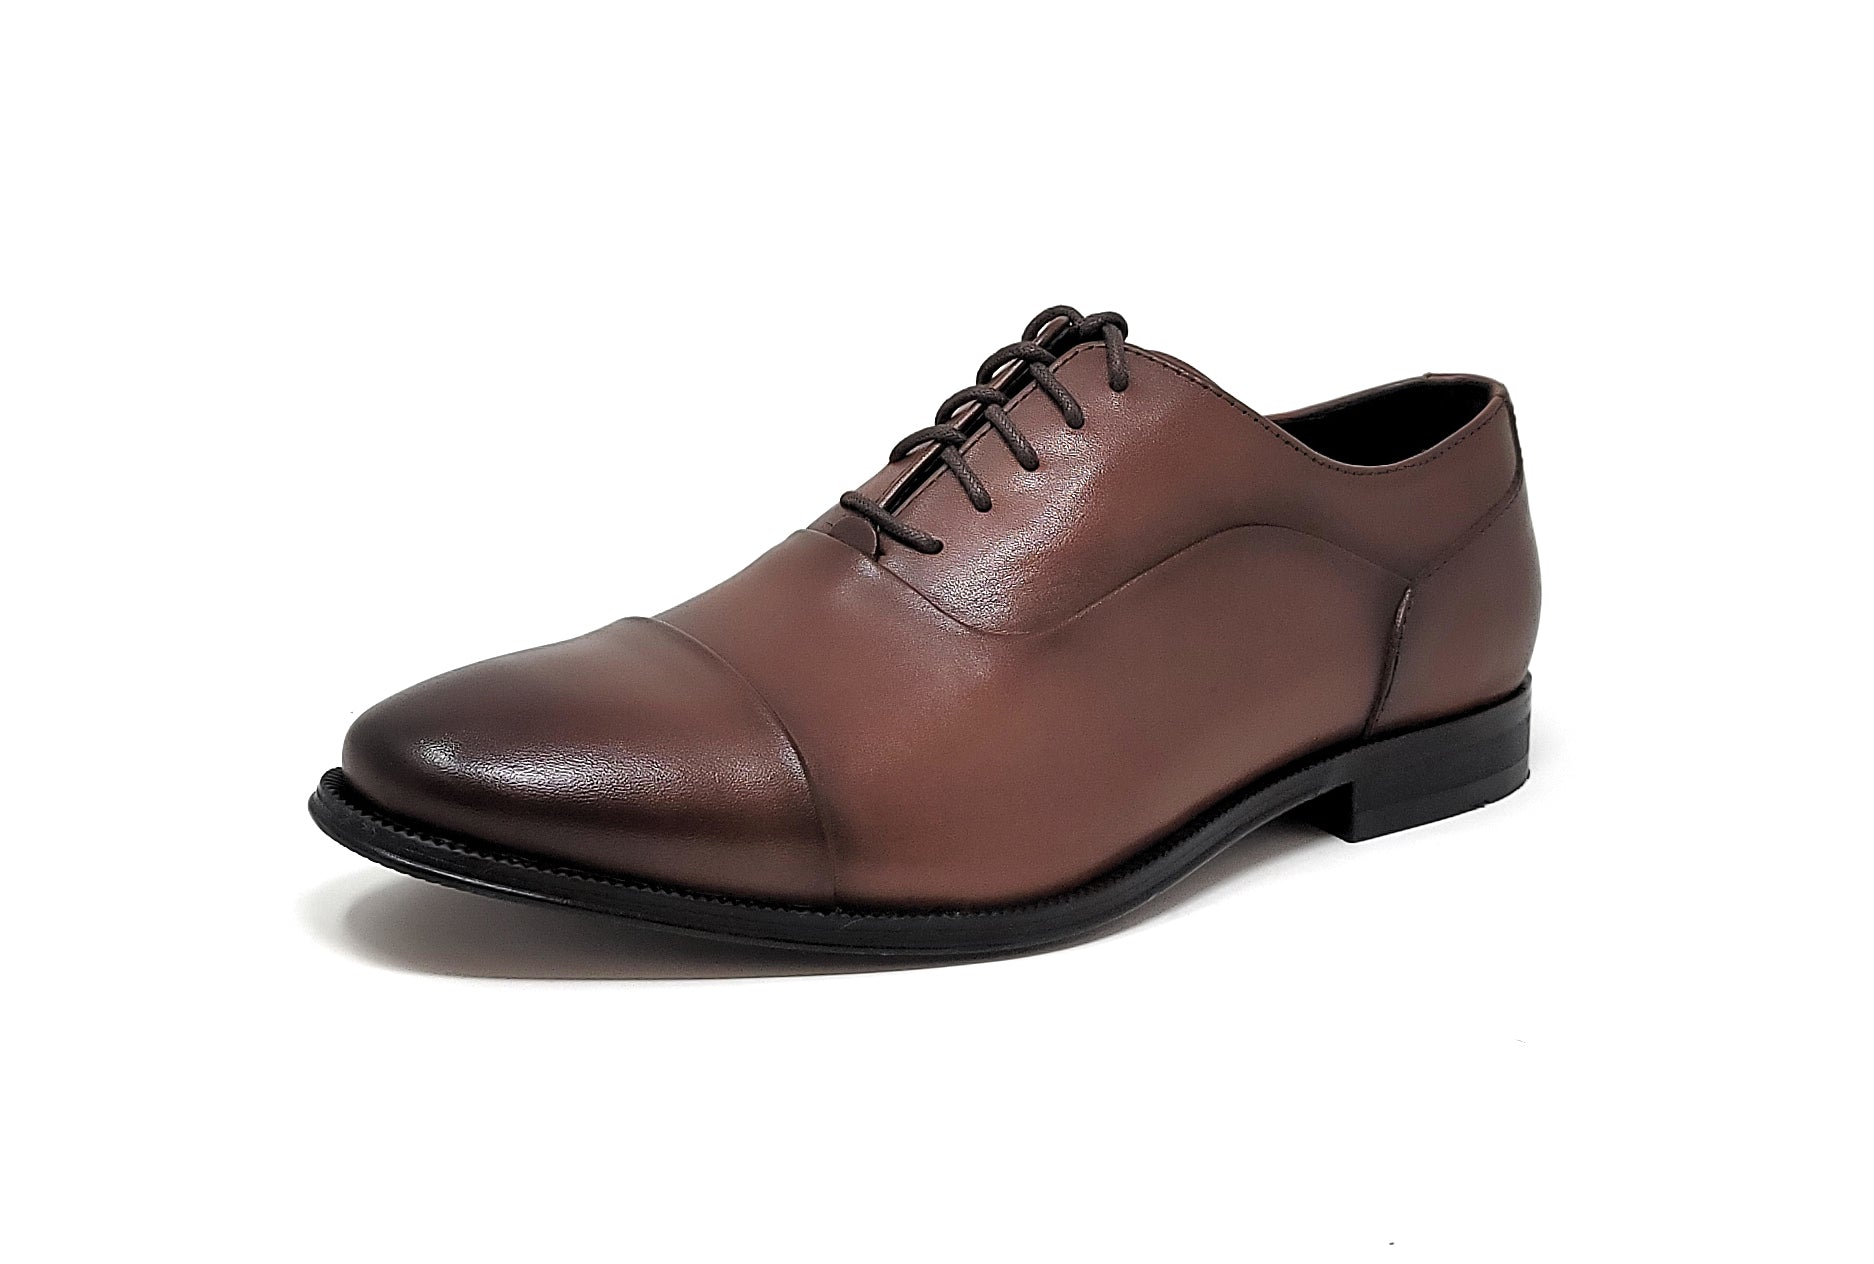 Florsheim Jetson CT OX Wide Cognac/Black Men's Shoes